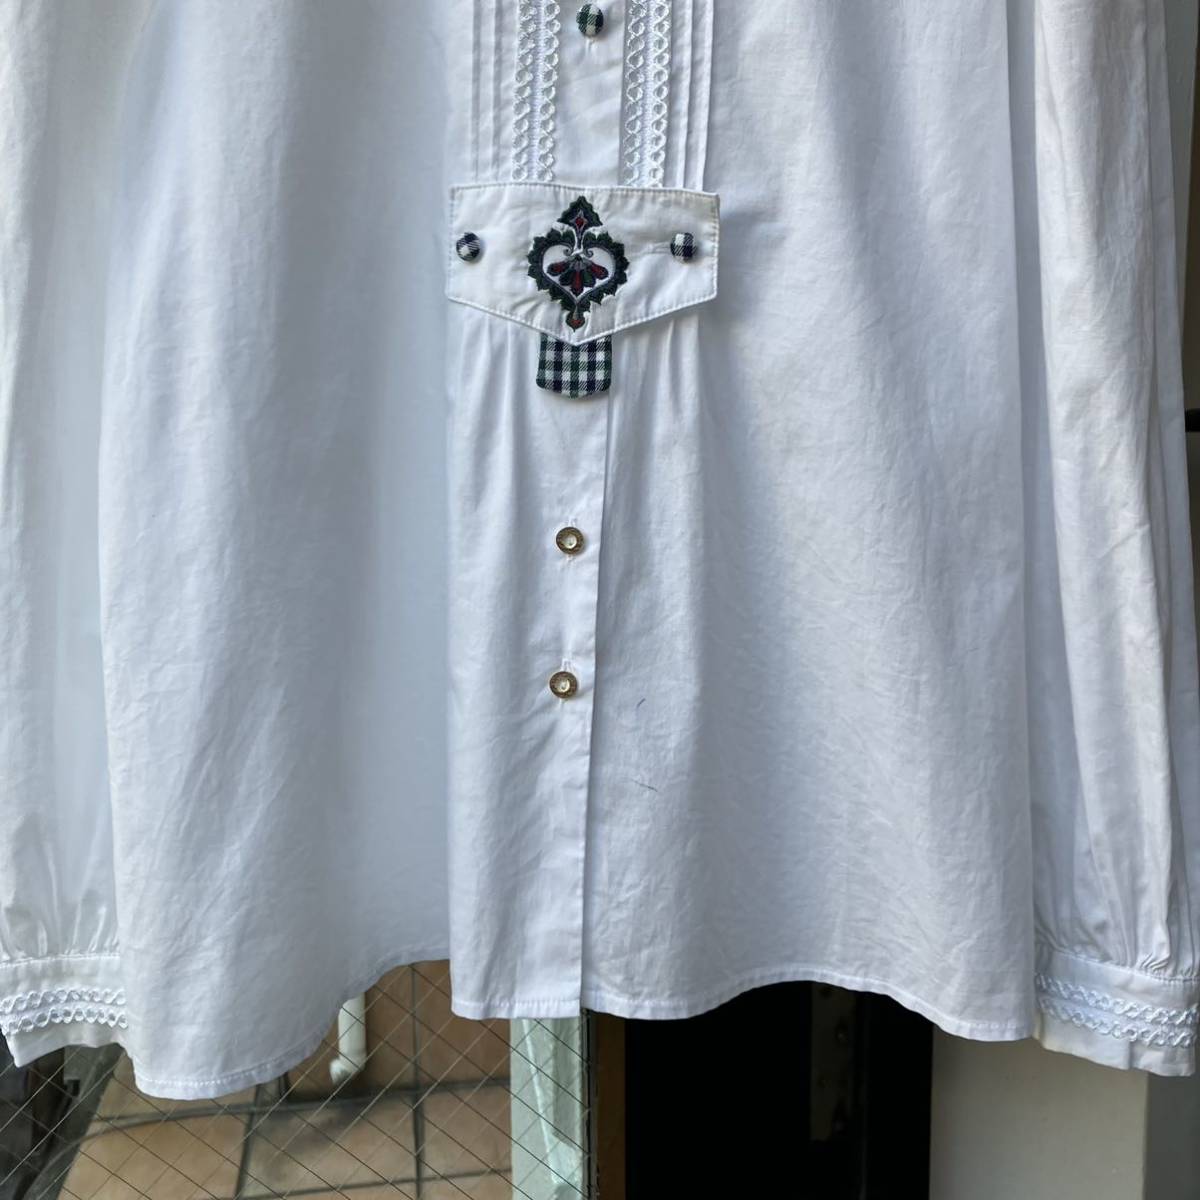 イギリス古着 blouse vintage shirt チロリアンブラウス ブラウス シャツ 長袖 半袖 長袖シャツ 白シャツ LV767_画像5